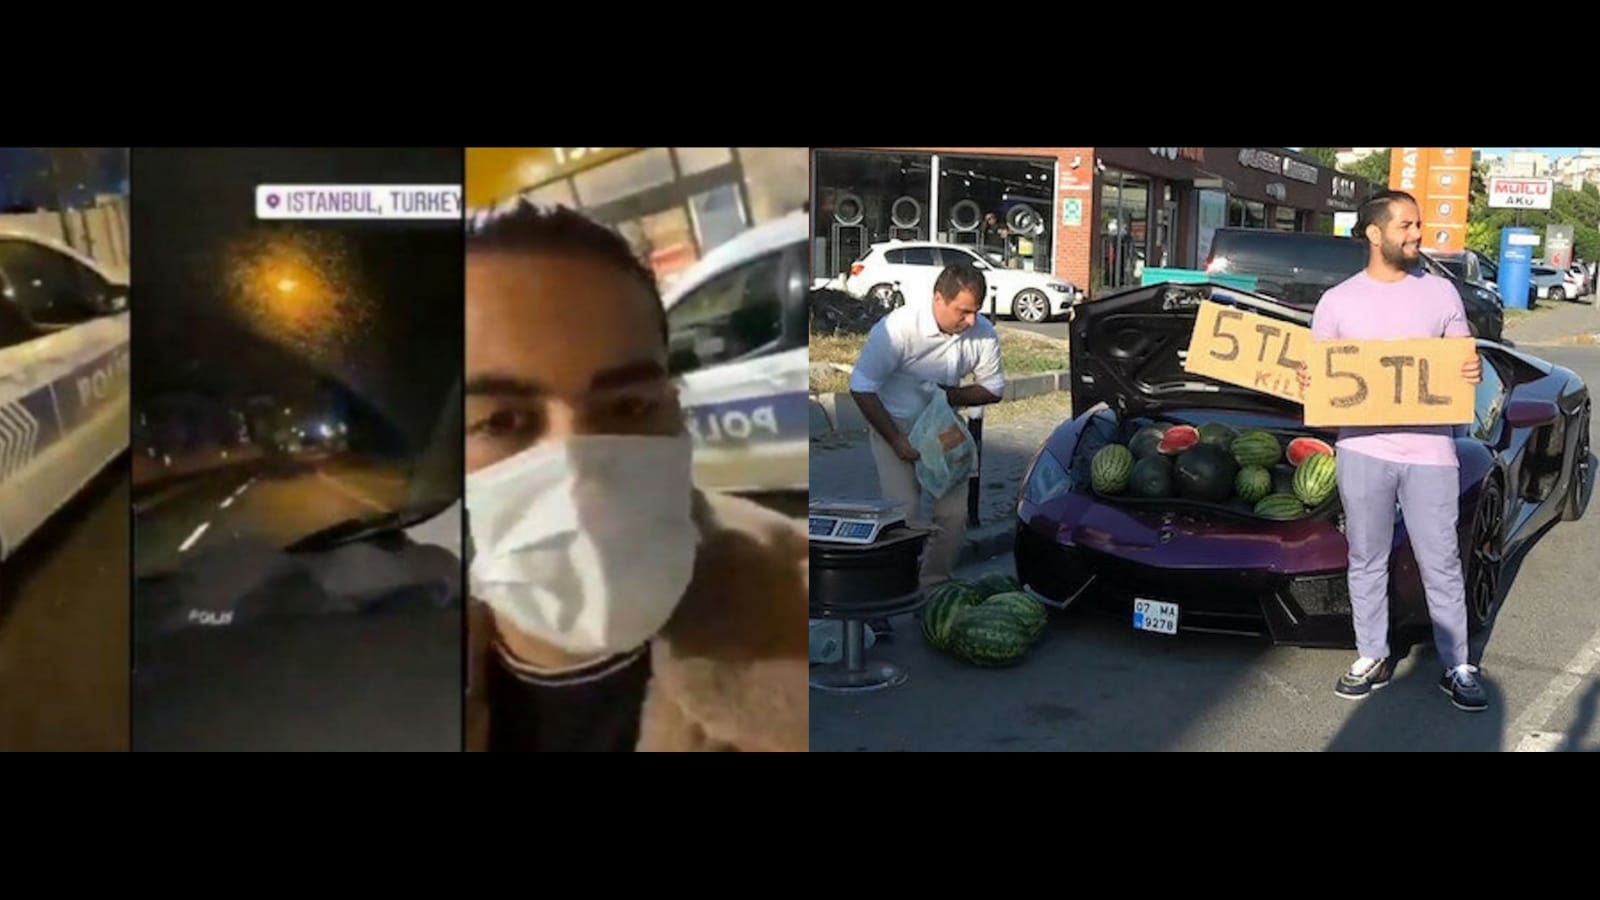 İstanbul'un sahibi benim diyerek polis otosuyla tur atan İranlı fenomen gözaltında